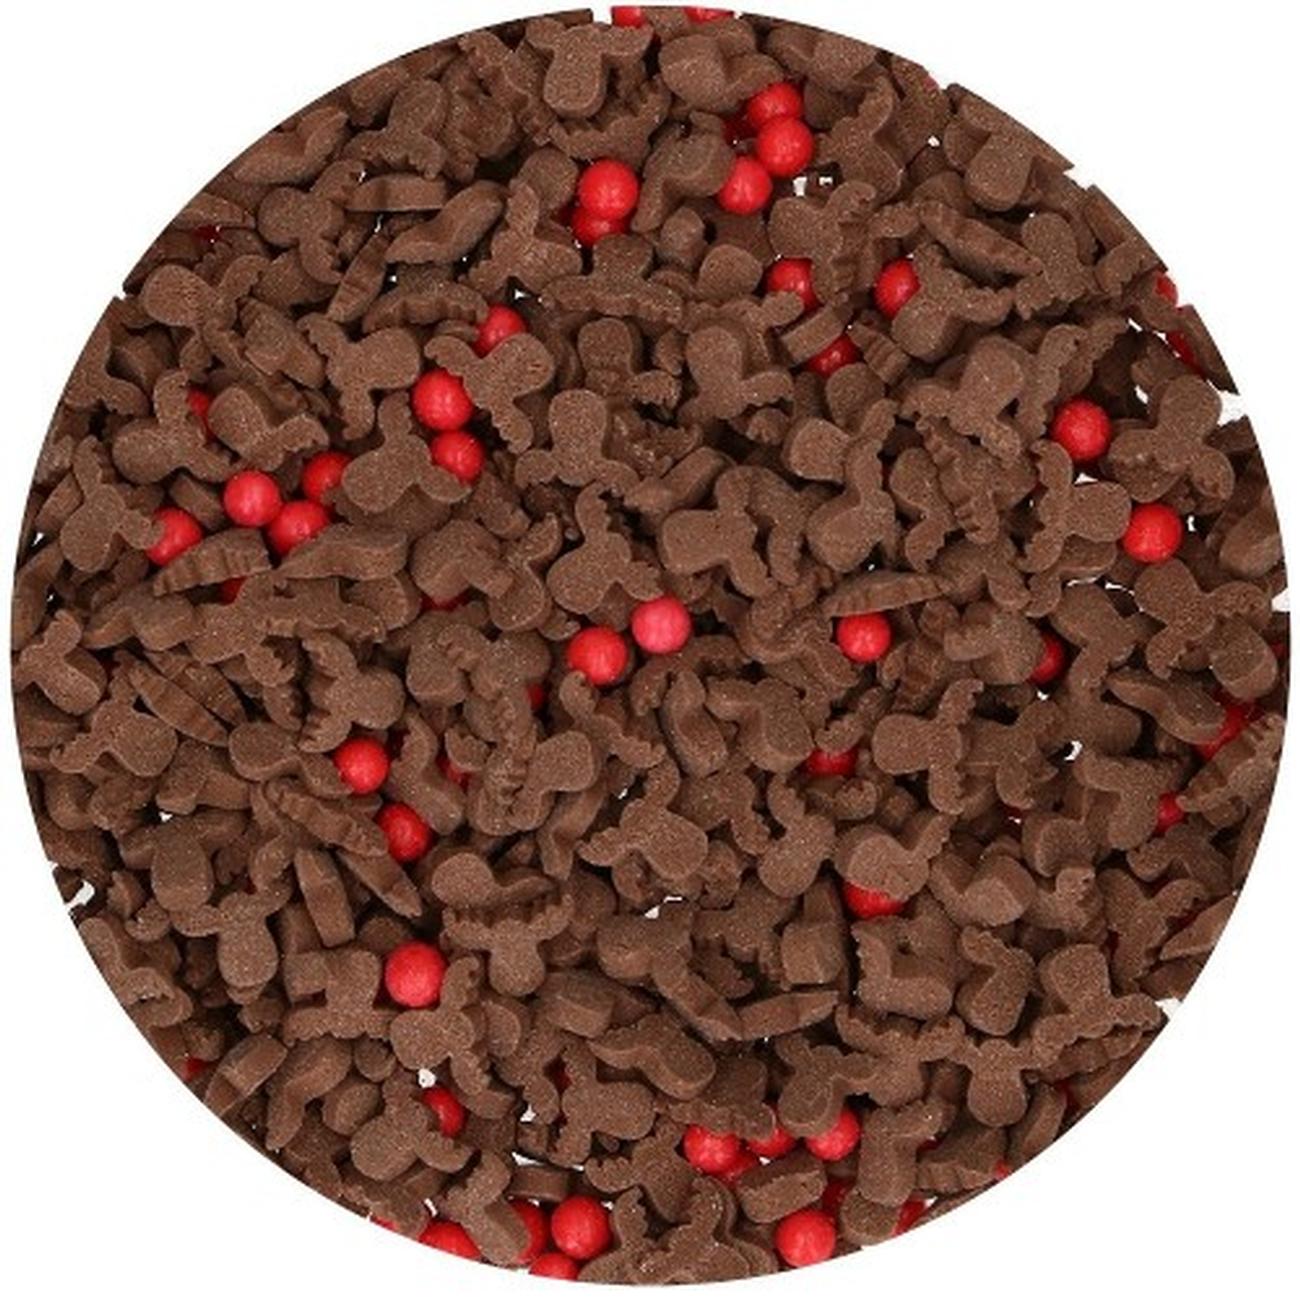 funcakes-edible-reindeer-mix-sprinkles - FunCakes Edible Reindeer Mix Sprinkles 55g